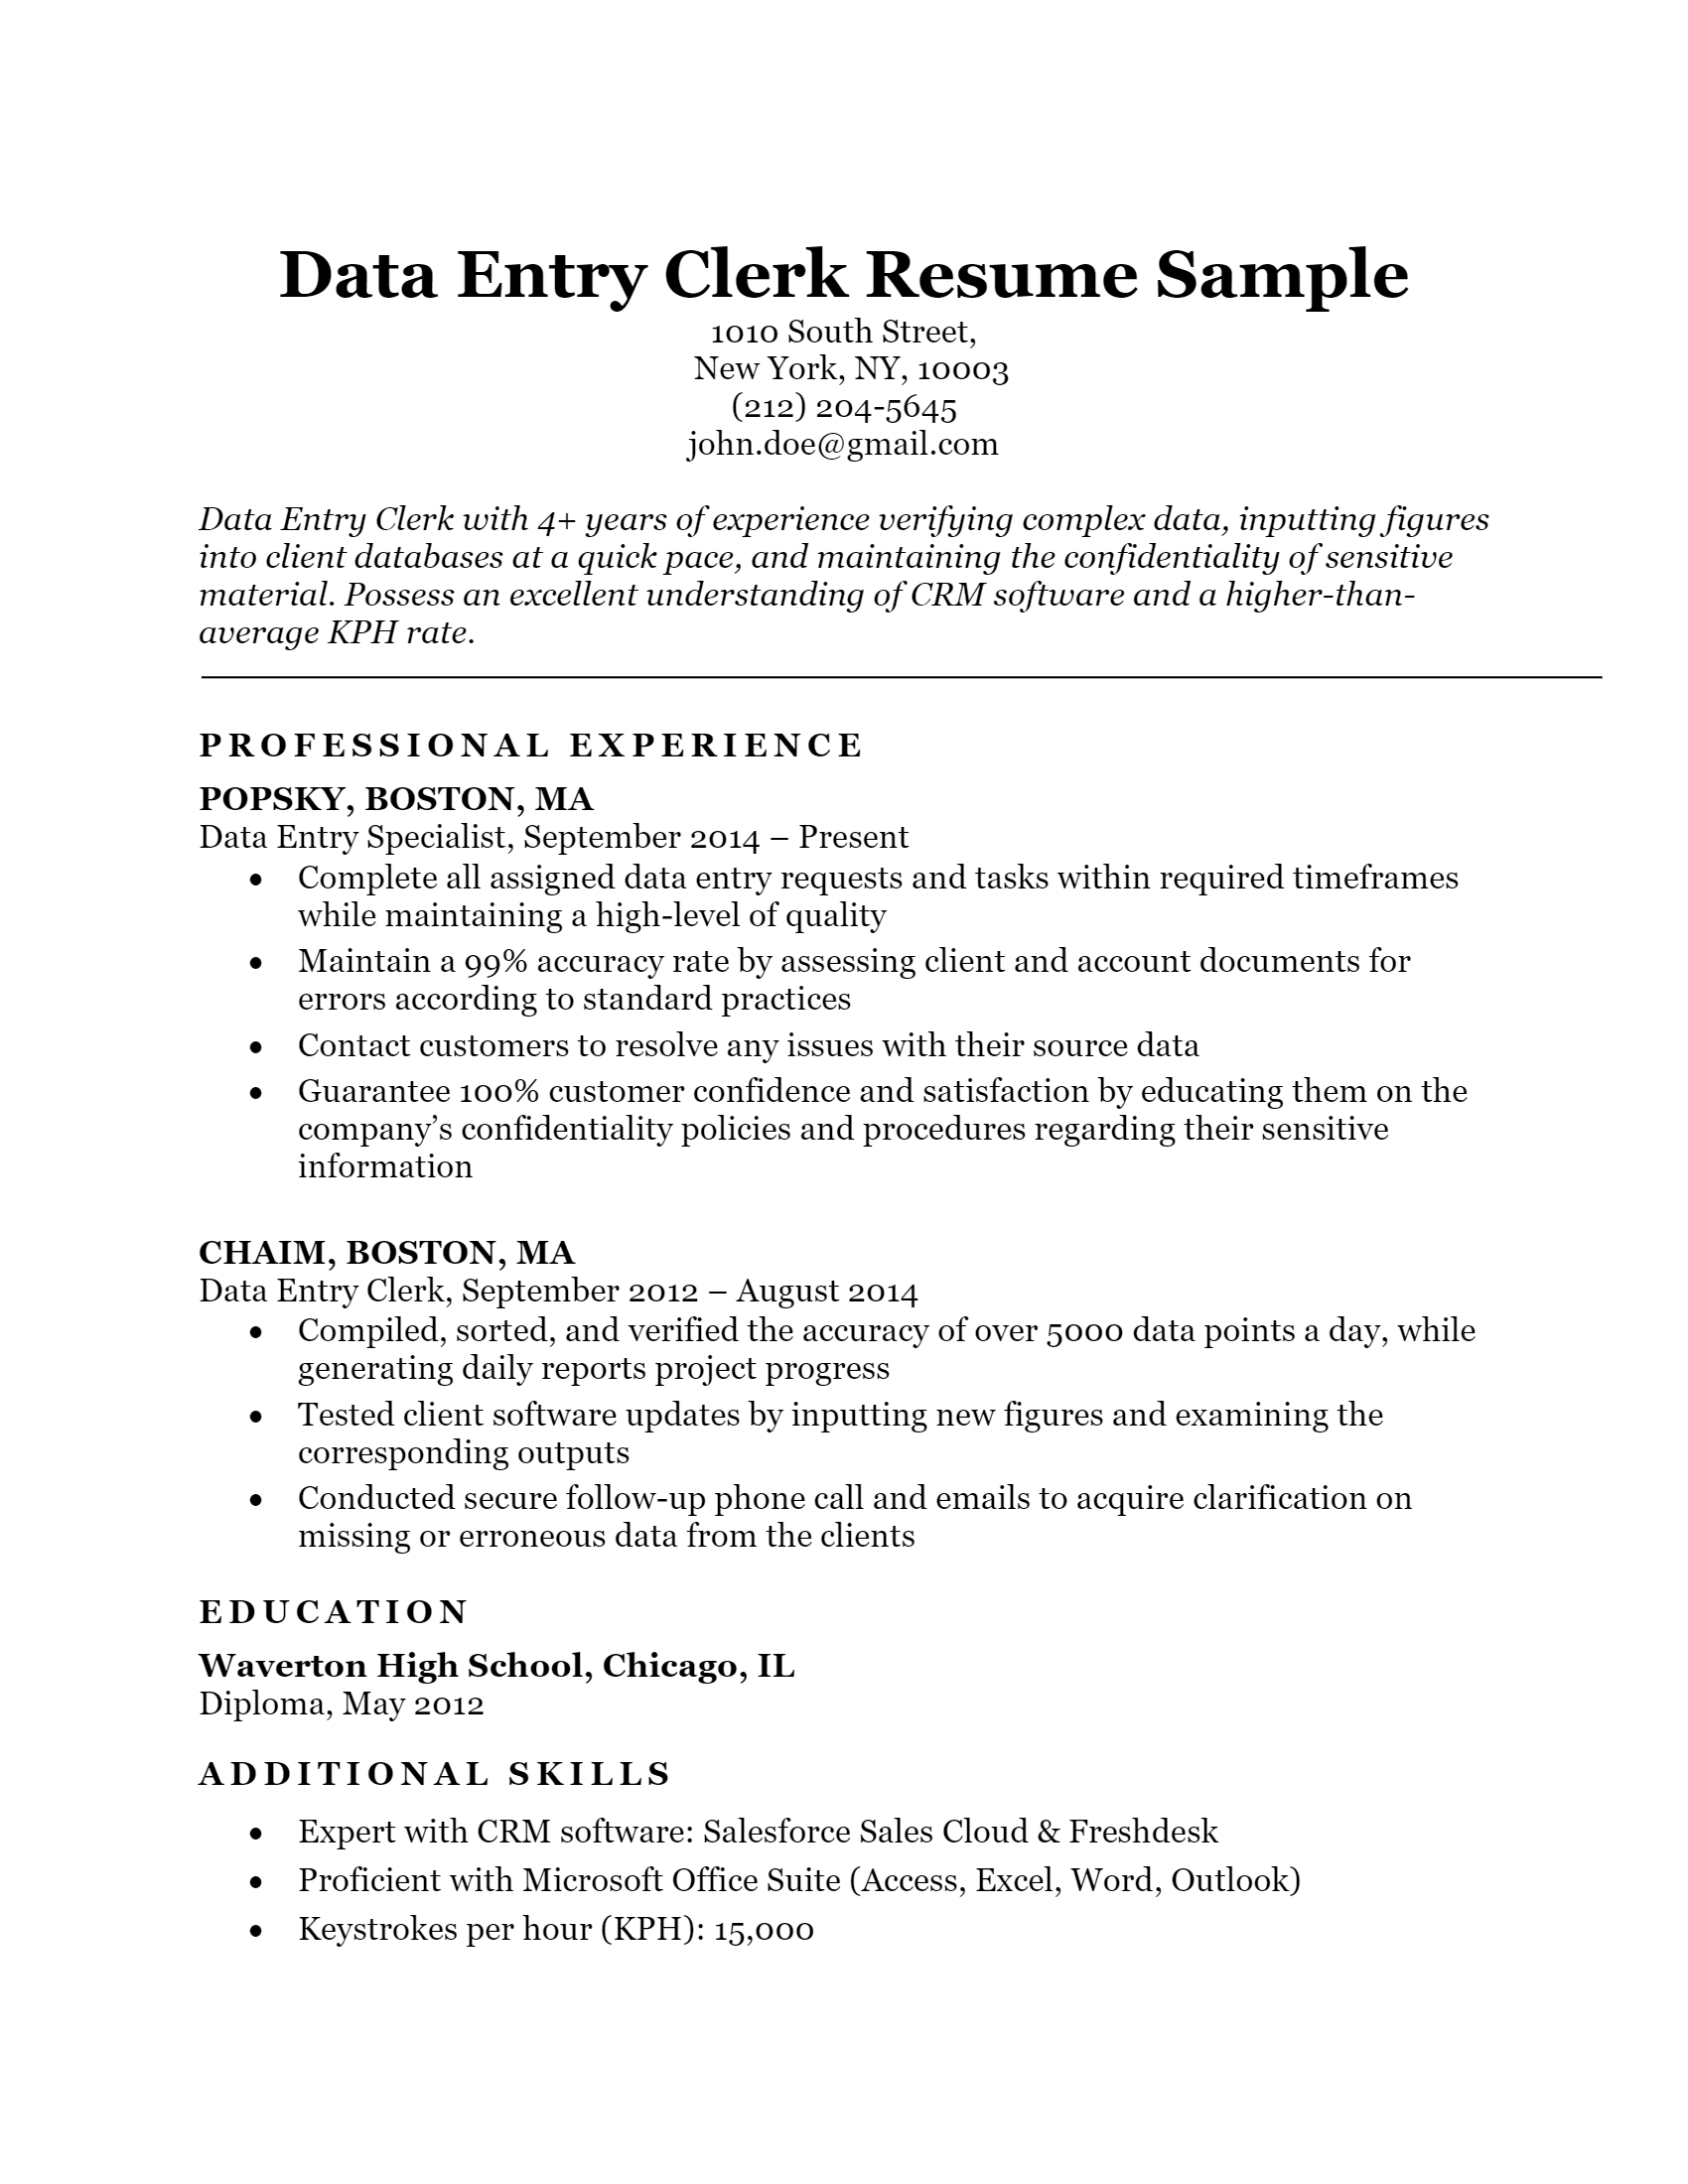 Data-Entry Clerk Resume .Docx (Word)